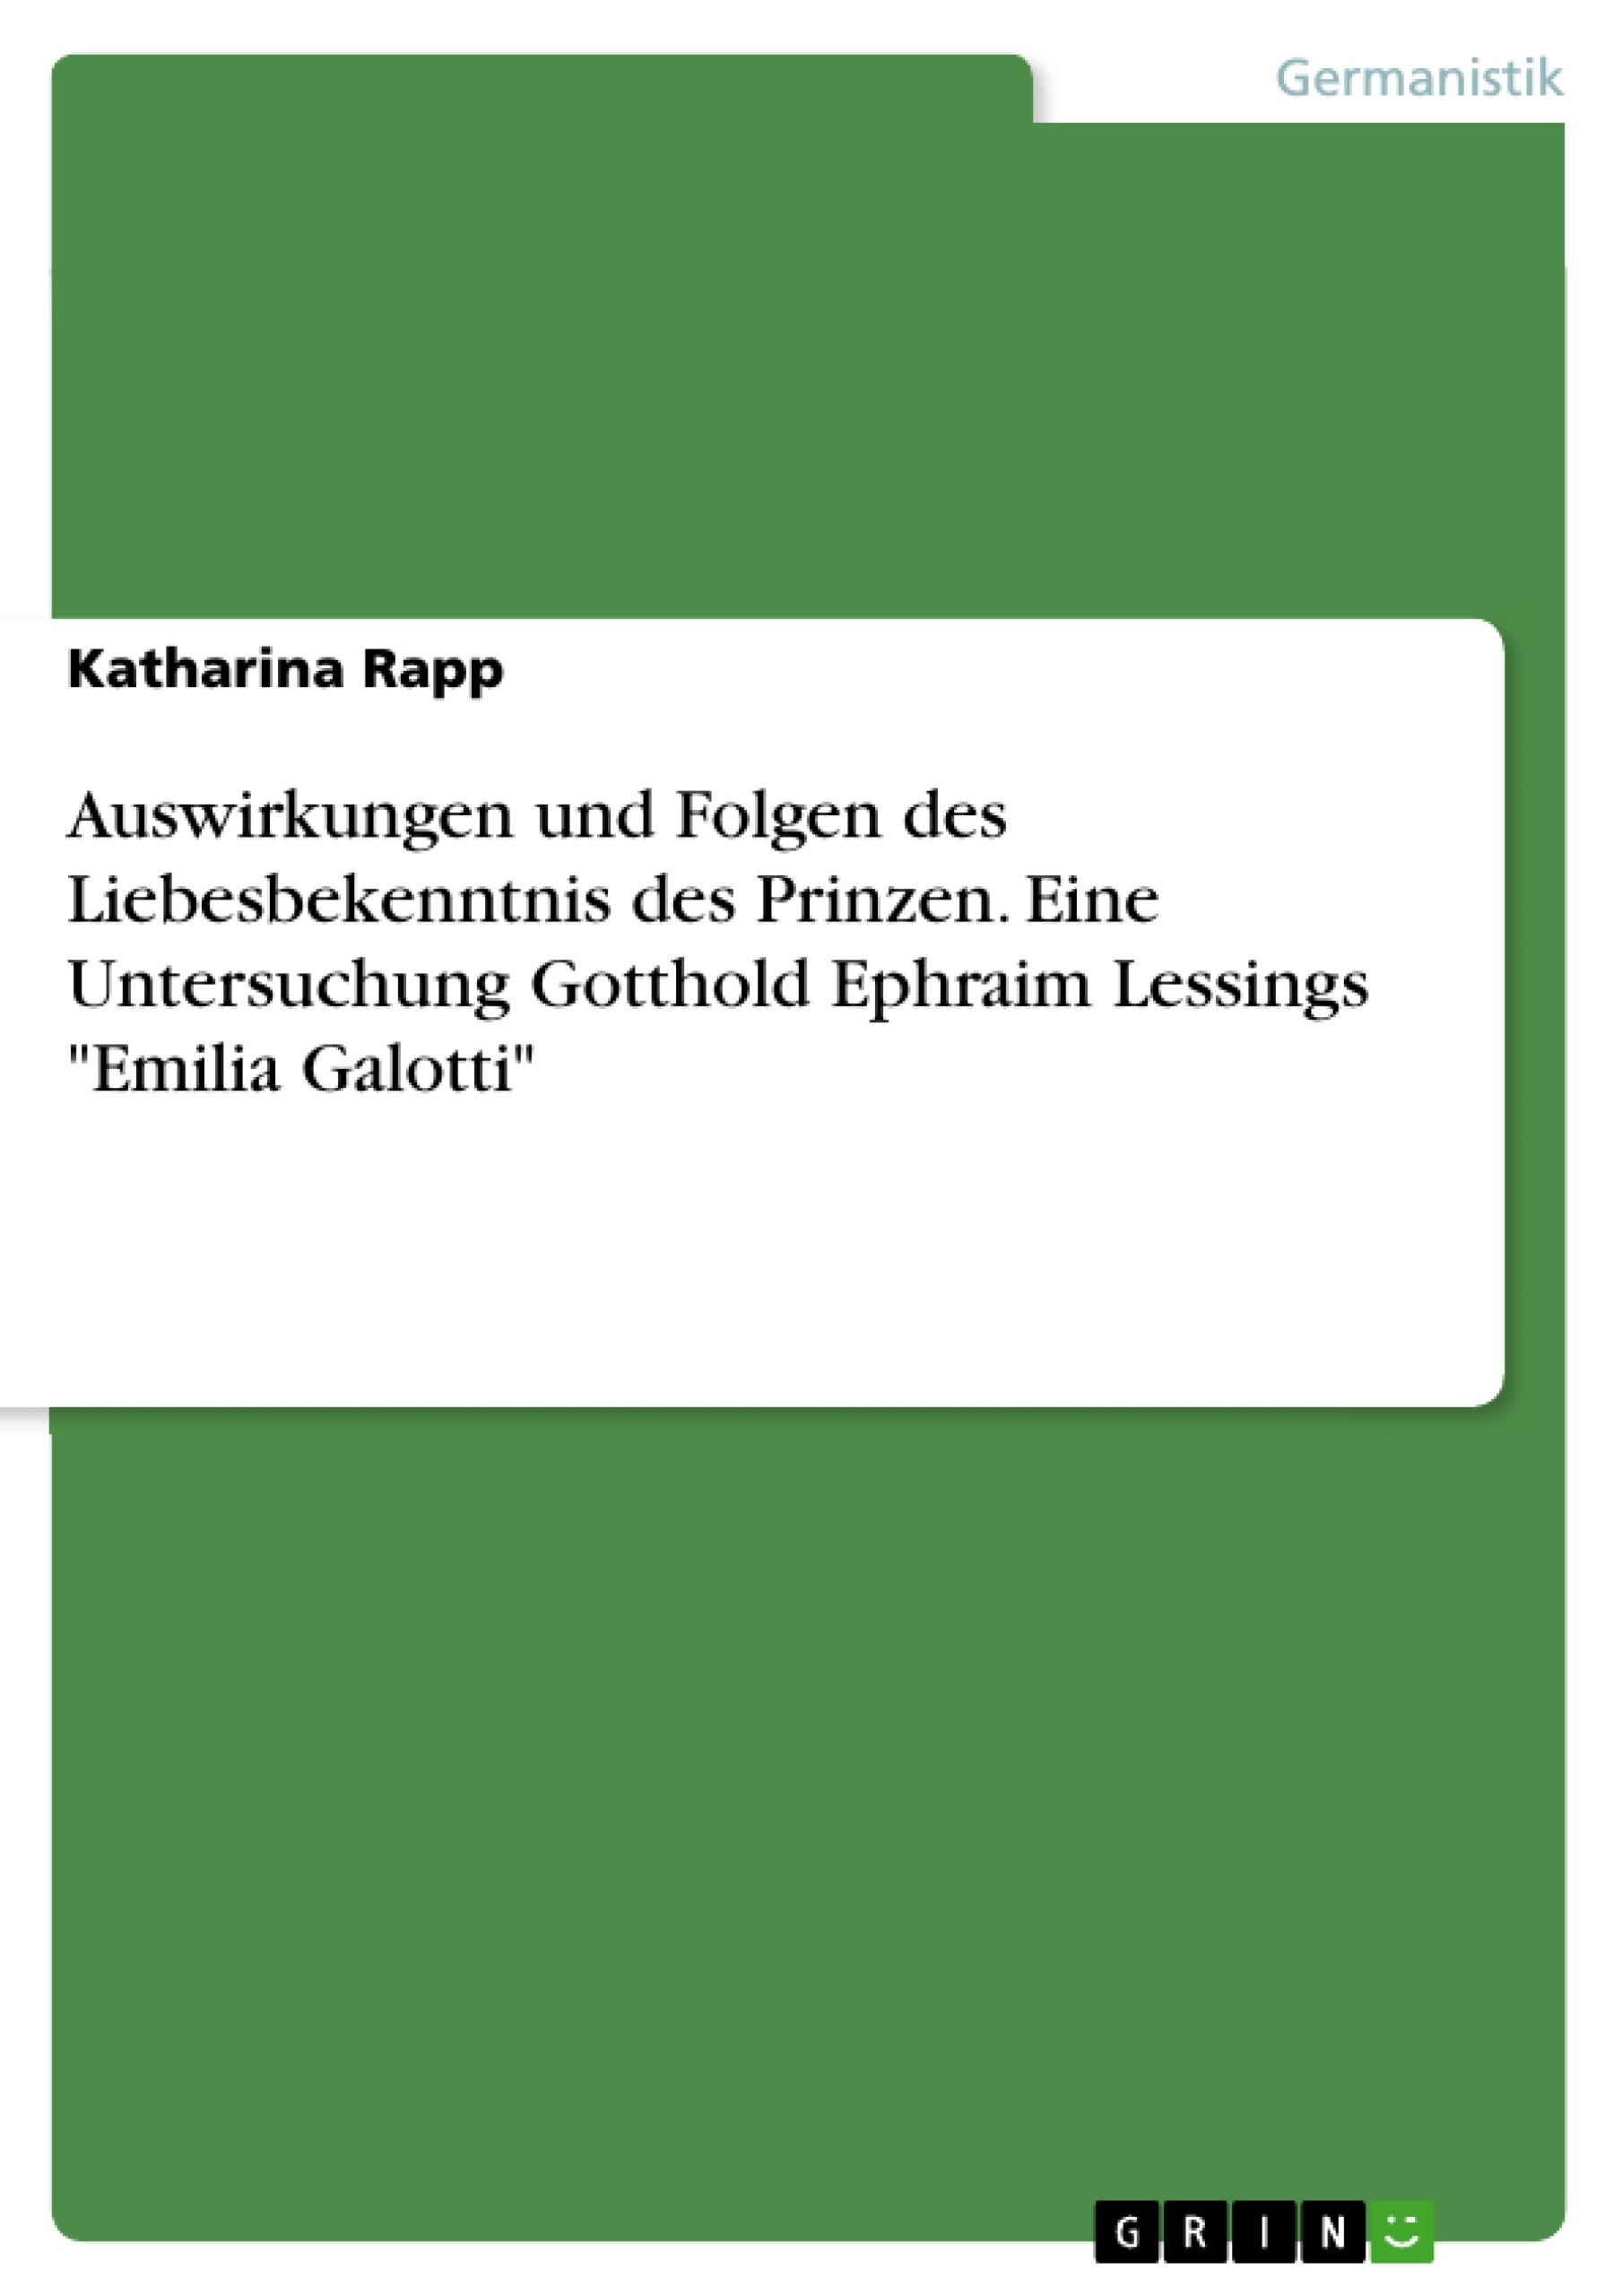 Titel: Auswirkungen und Folgen des Liebesbekenntnis des Prinzen. Eine Untersuchung Gotthold Ephraim Lessings "Emilia Galotti"